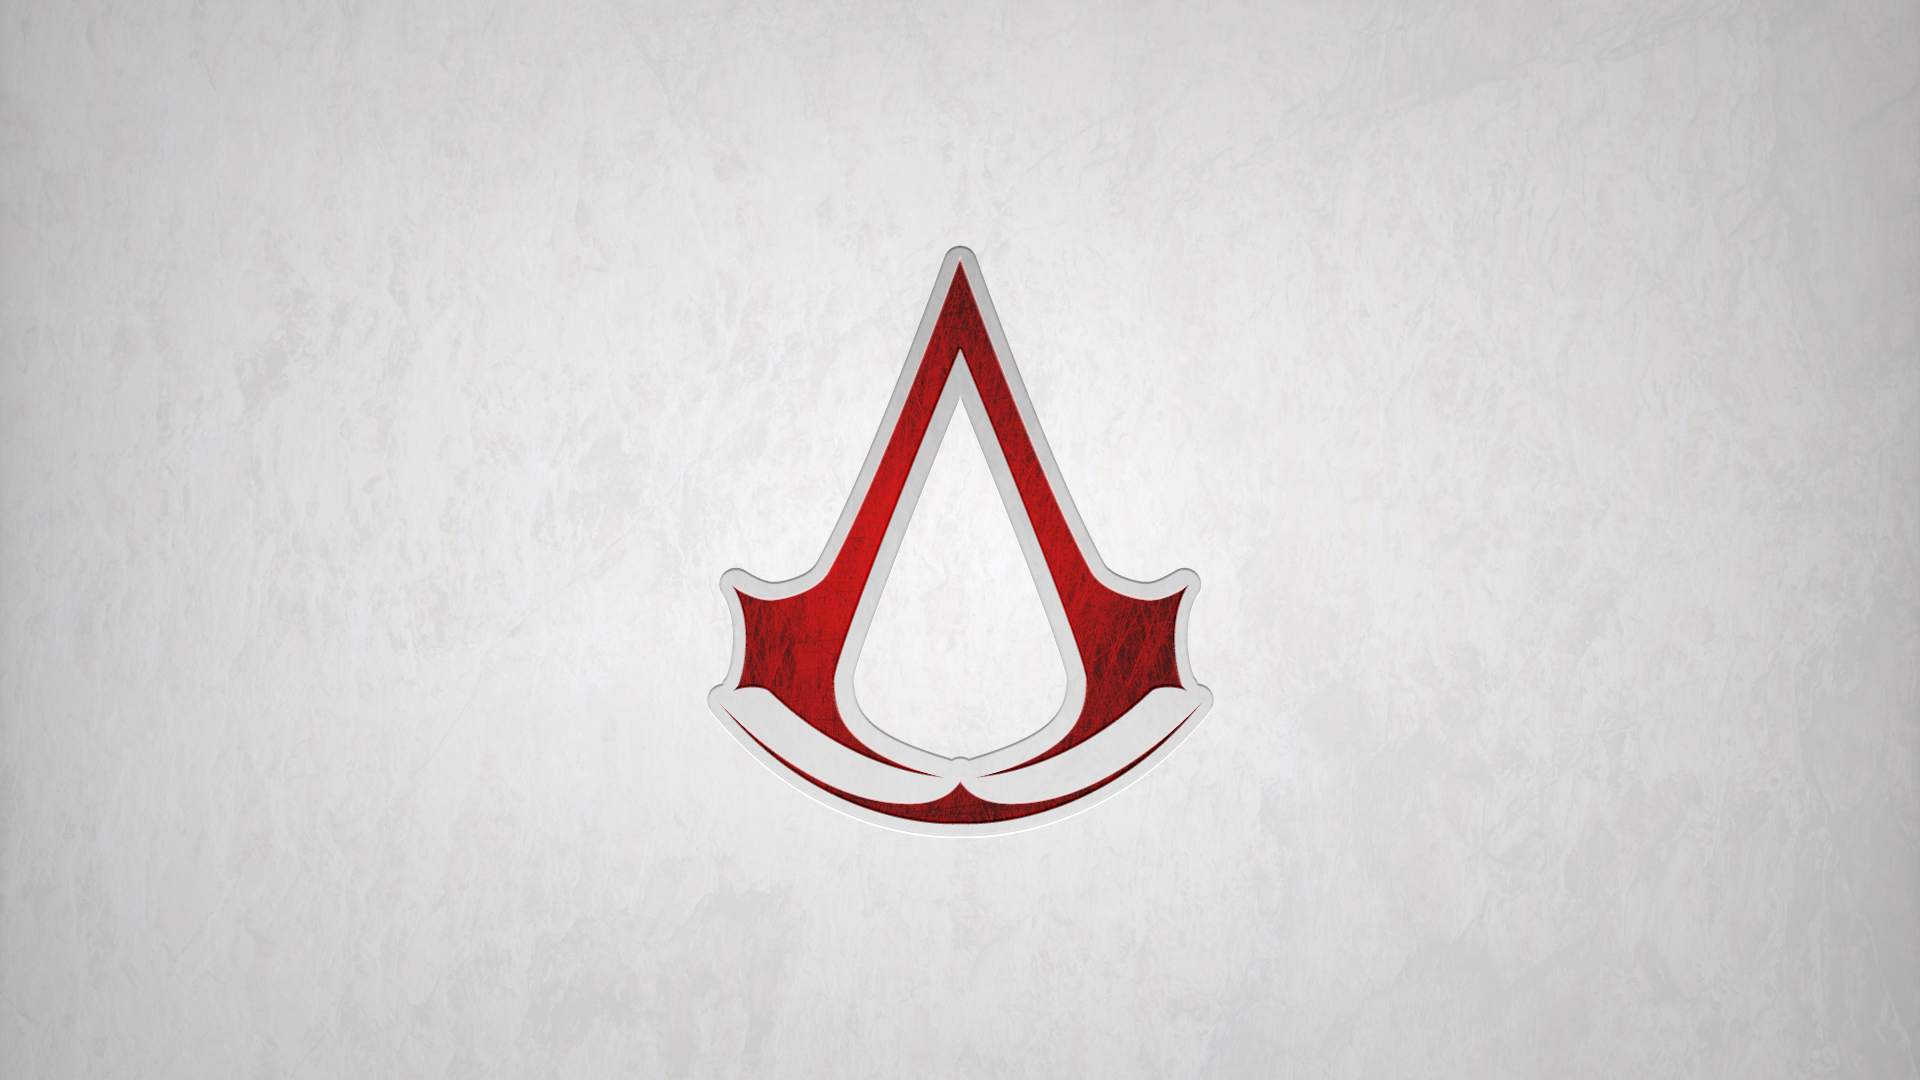 Assassins creed red дата. Assassin's Creed logo. Красные обои со знаком ассасина. Ассасин ред. Assassin красный.